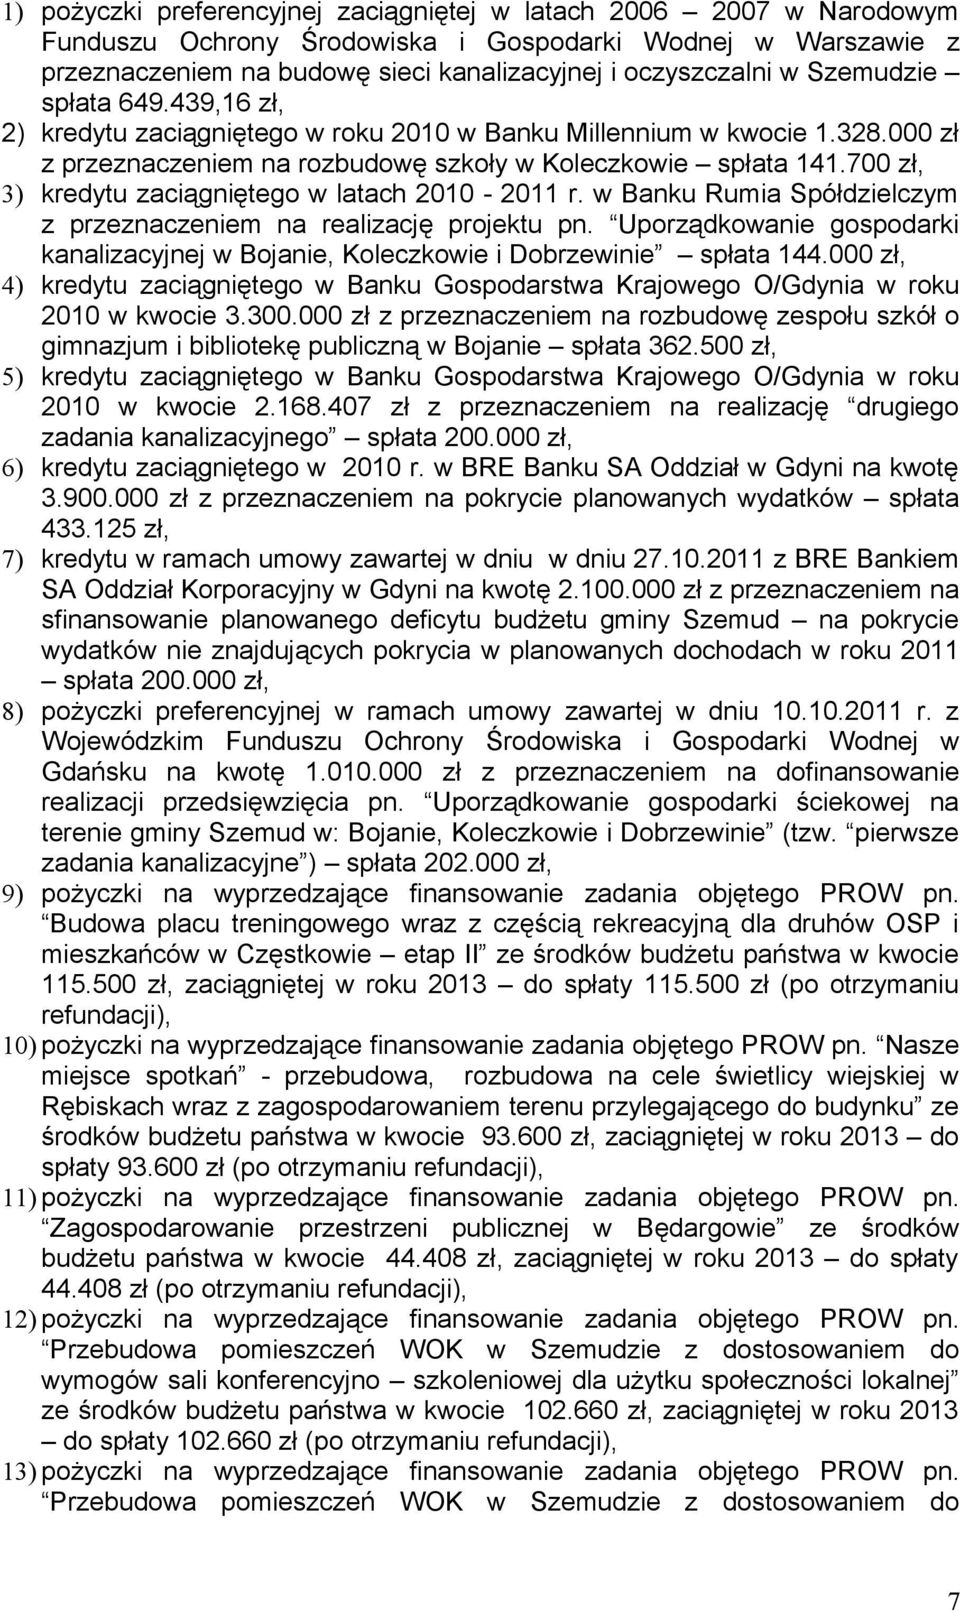 700 zł, 3) kredytu zaciągniętego w latach 2010-2011 r. w Banku Rumia Spółdzielczym z przeznaczeniem na realizację projektu pn.